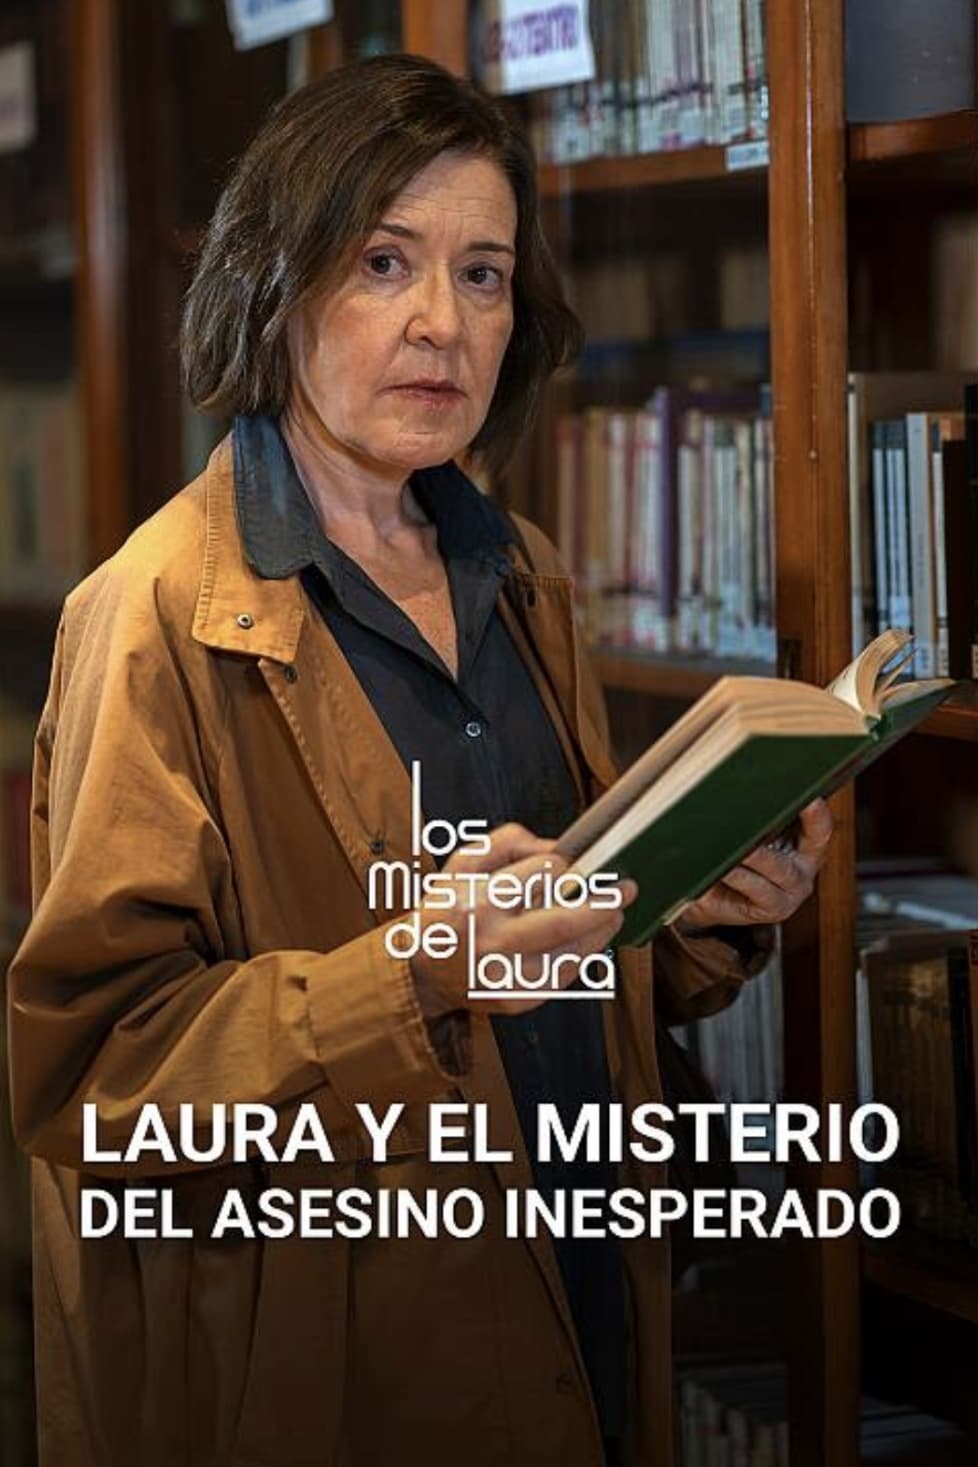 Laura y el misterio del asesino inesperado - Laura y el misterio del asesino inesperado